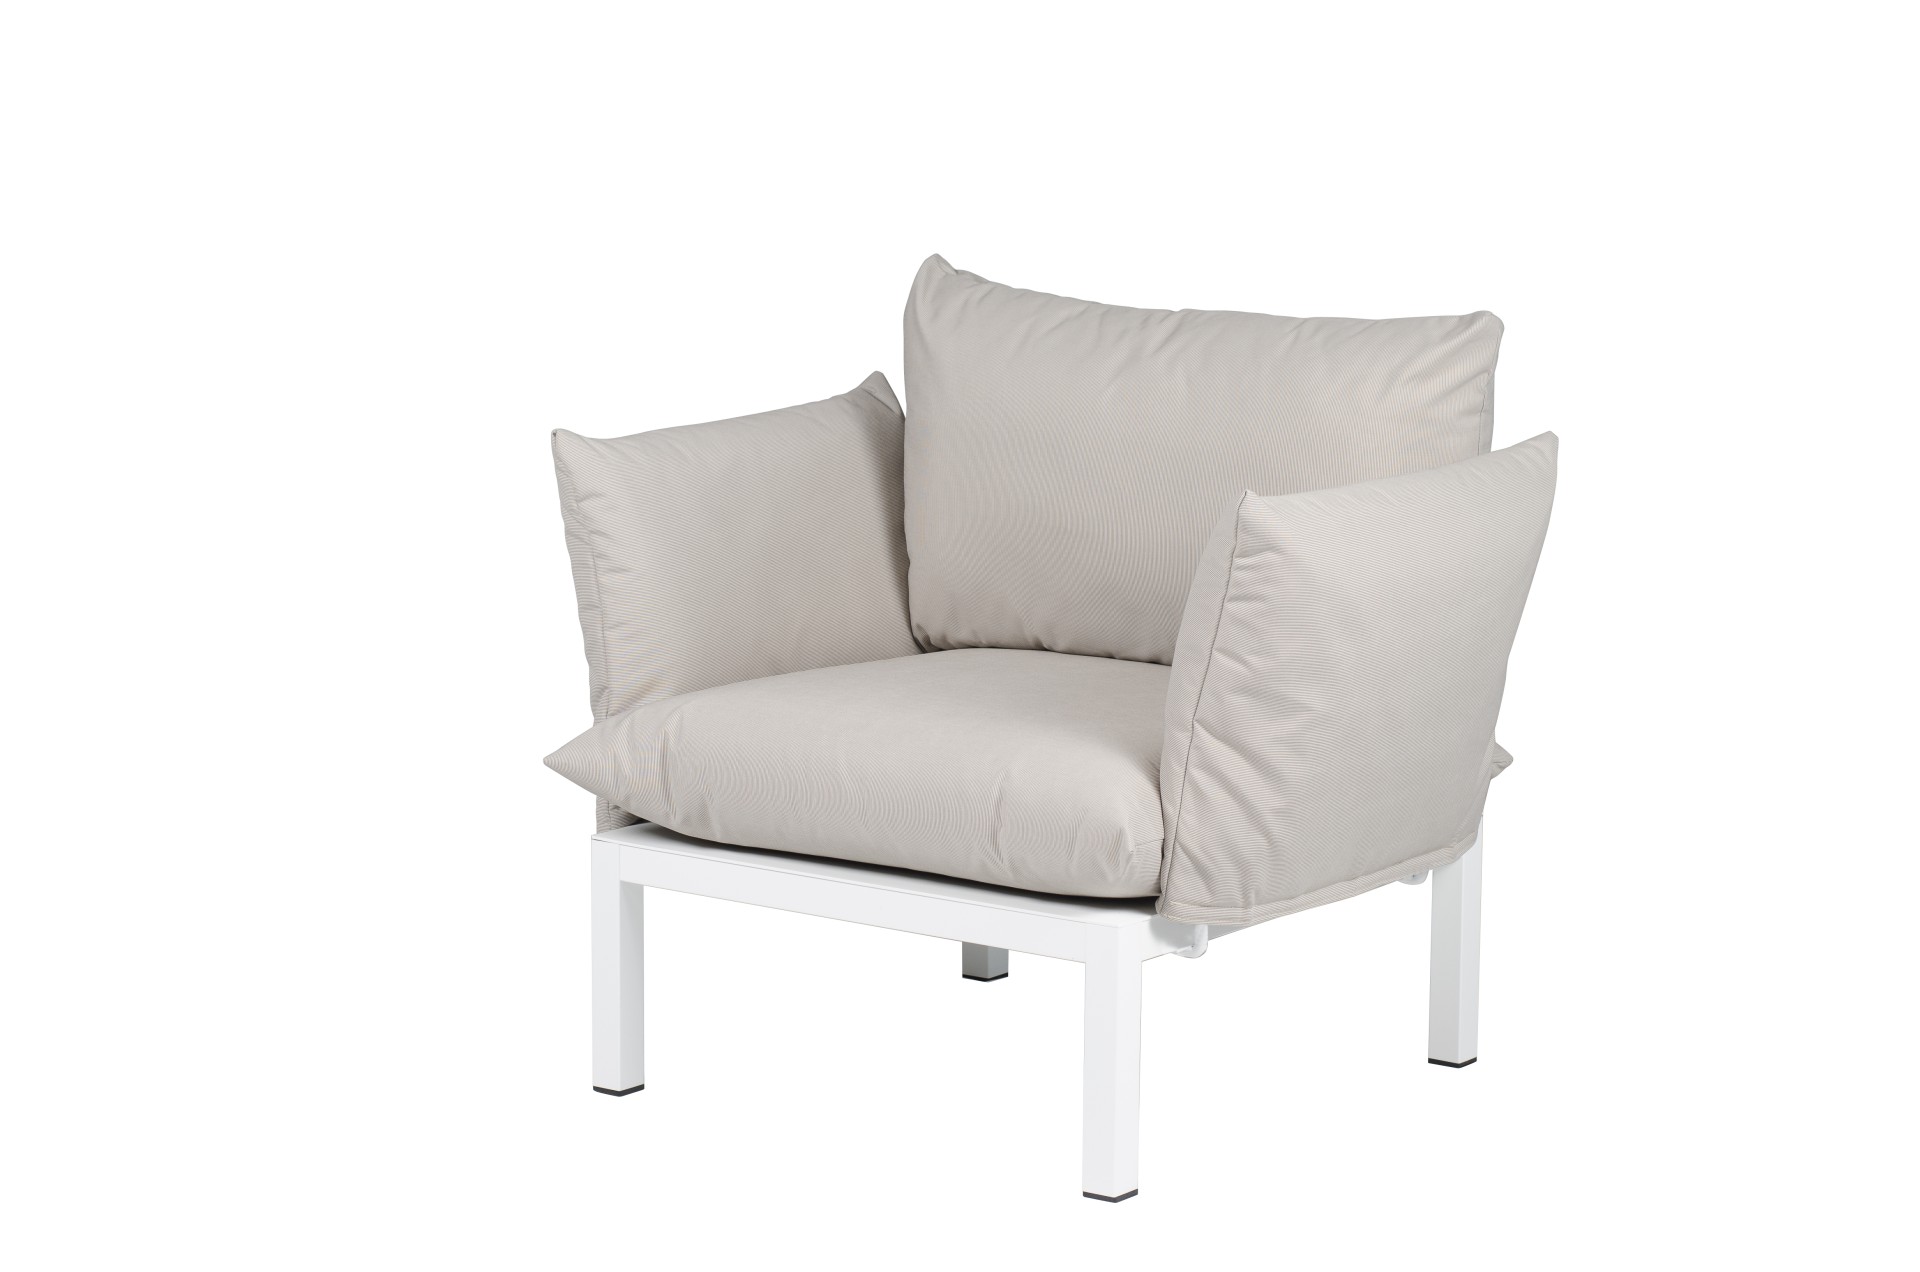 Die Gartenlounge Domino bestehend aus einer 5er-Kombination und einem Sessel. Damit ist sie ein echter Hingucker in deinem Garten. Designet wurde es von der Marke Jan Kurtz. Das Gestell ist aus Aluminium und hat eine weiße Farbe. Der Bezug ist Taupe.